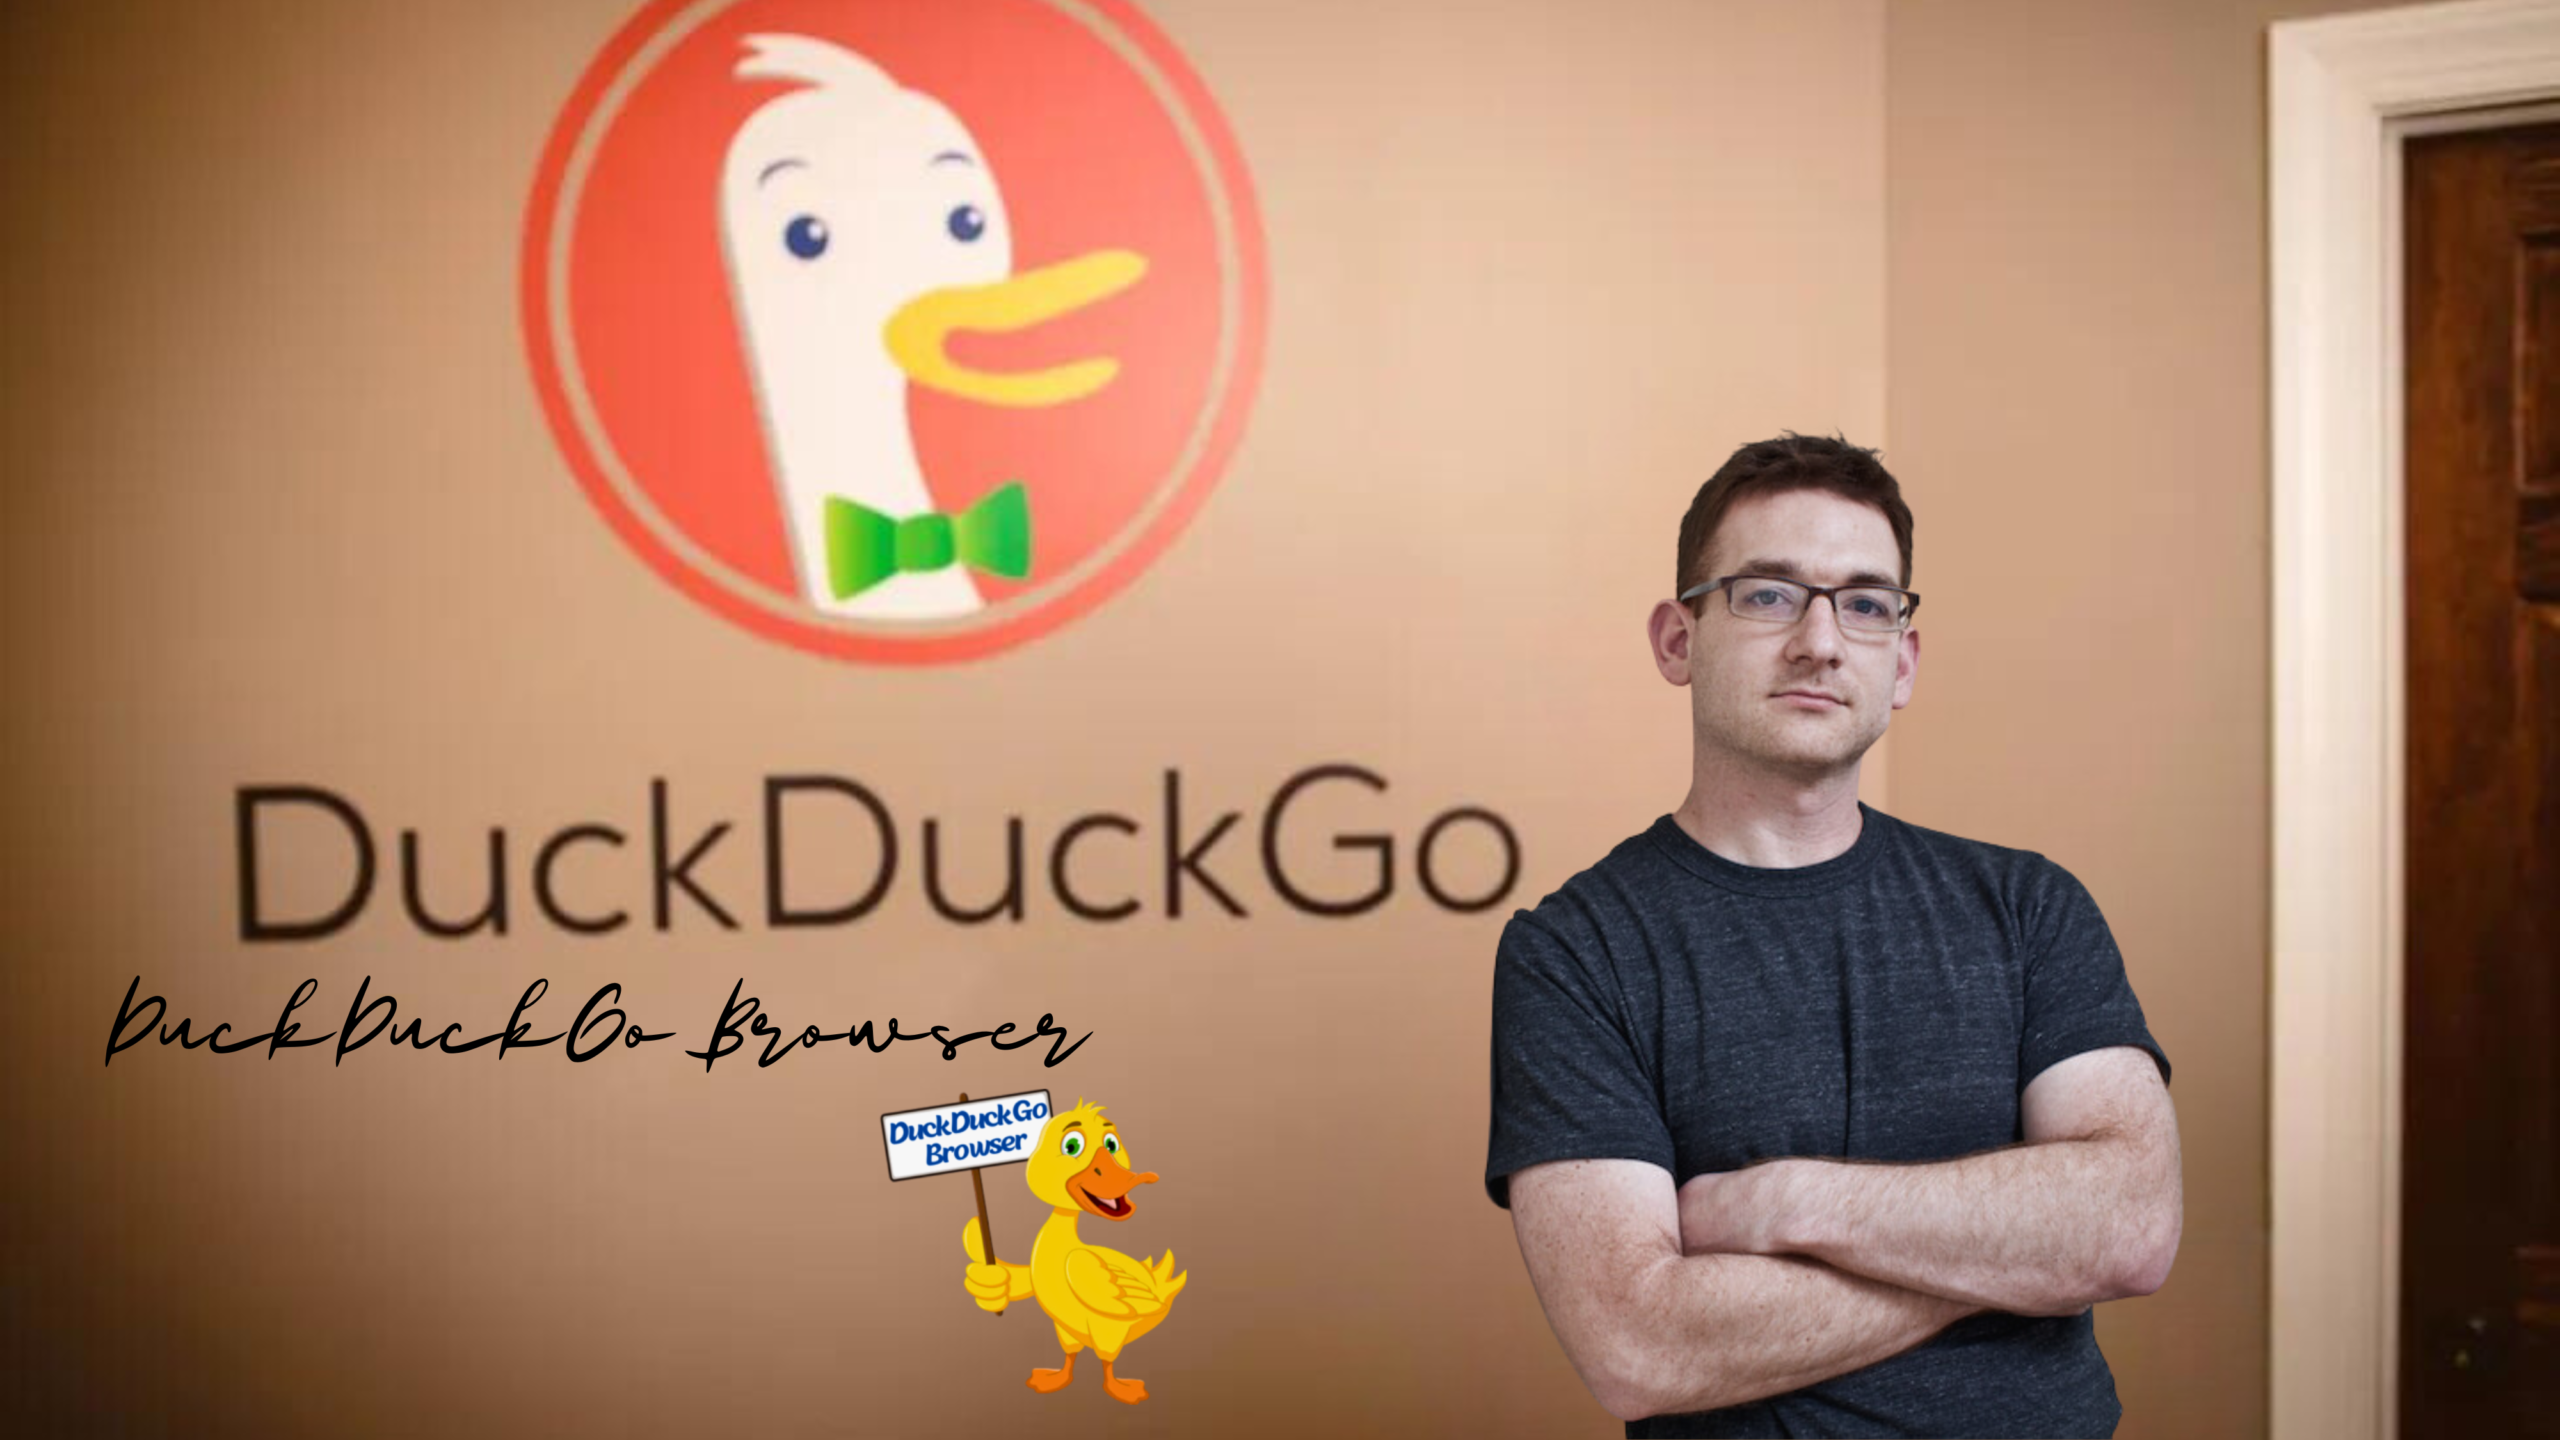 DuckDuckGo CEO